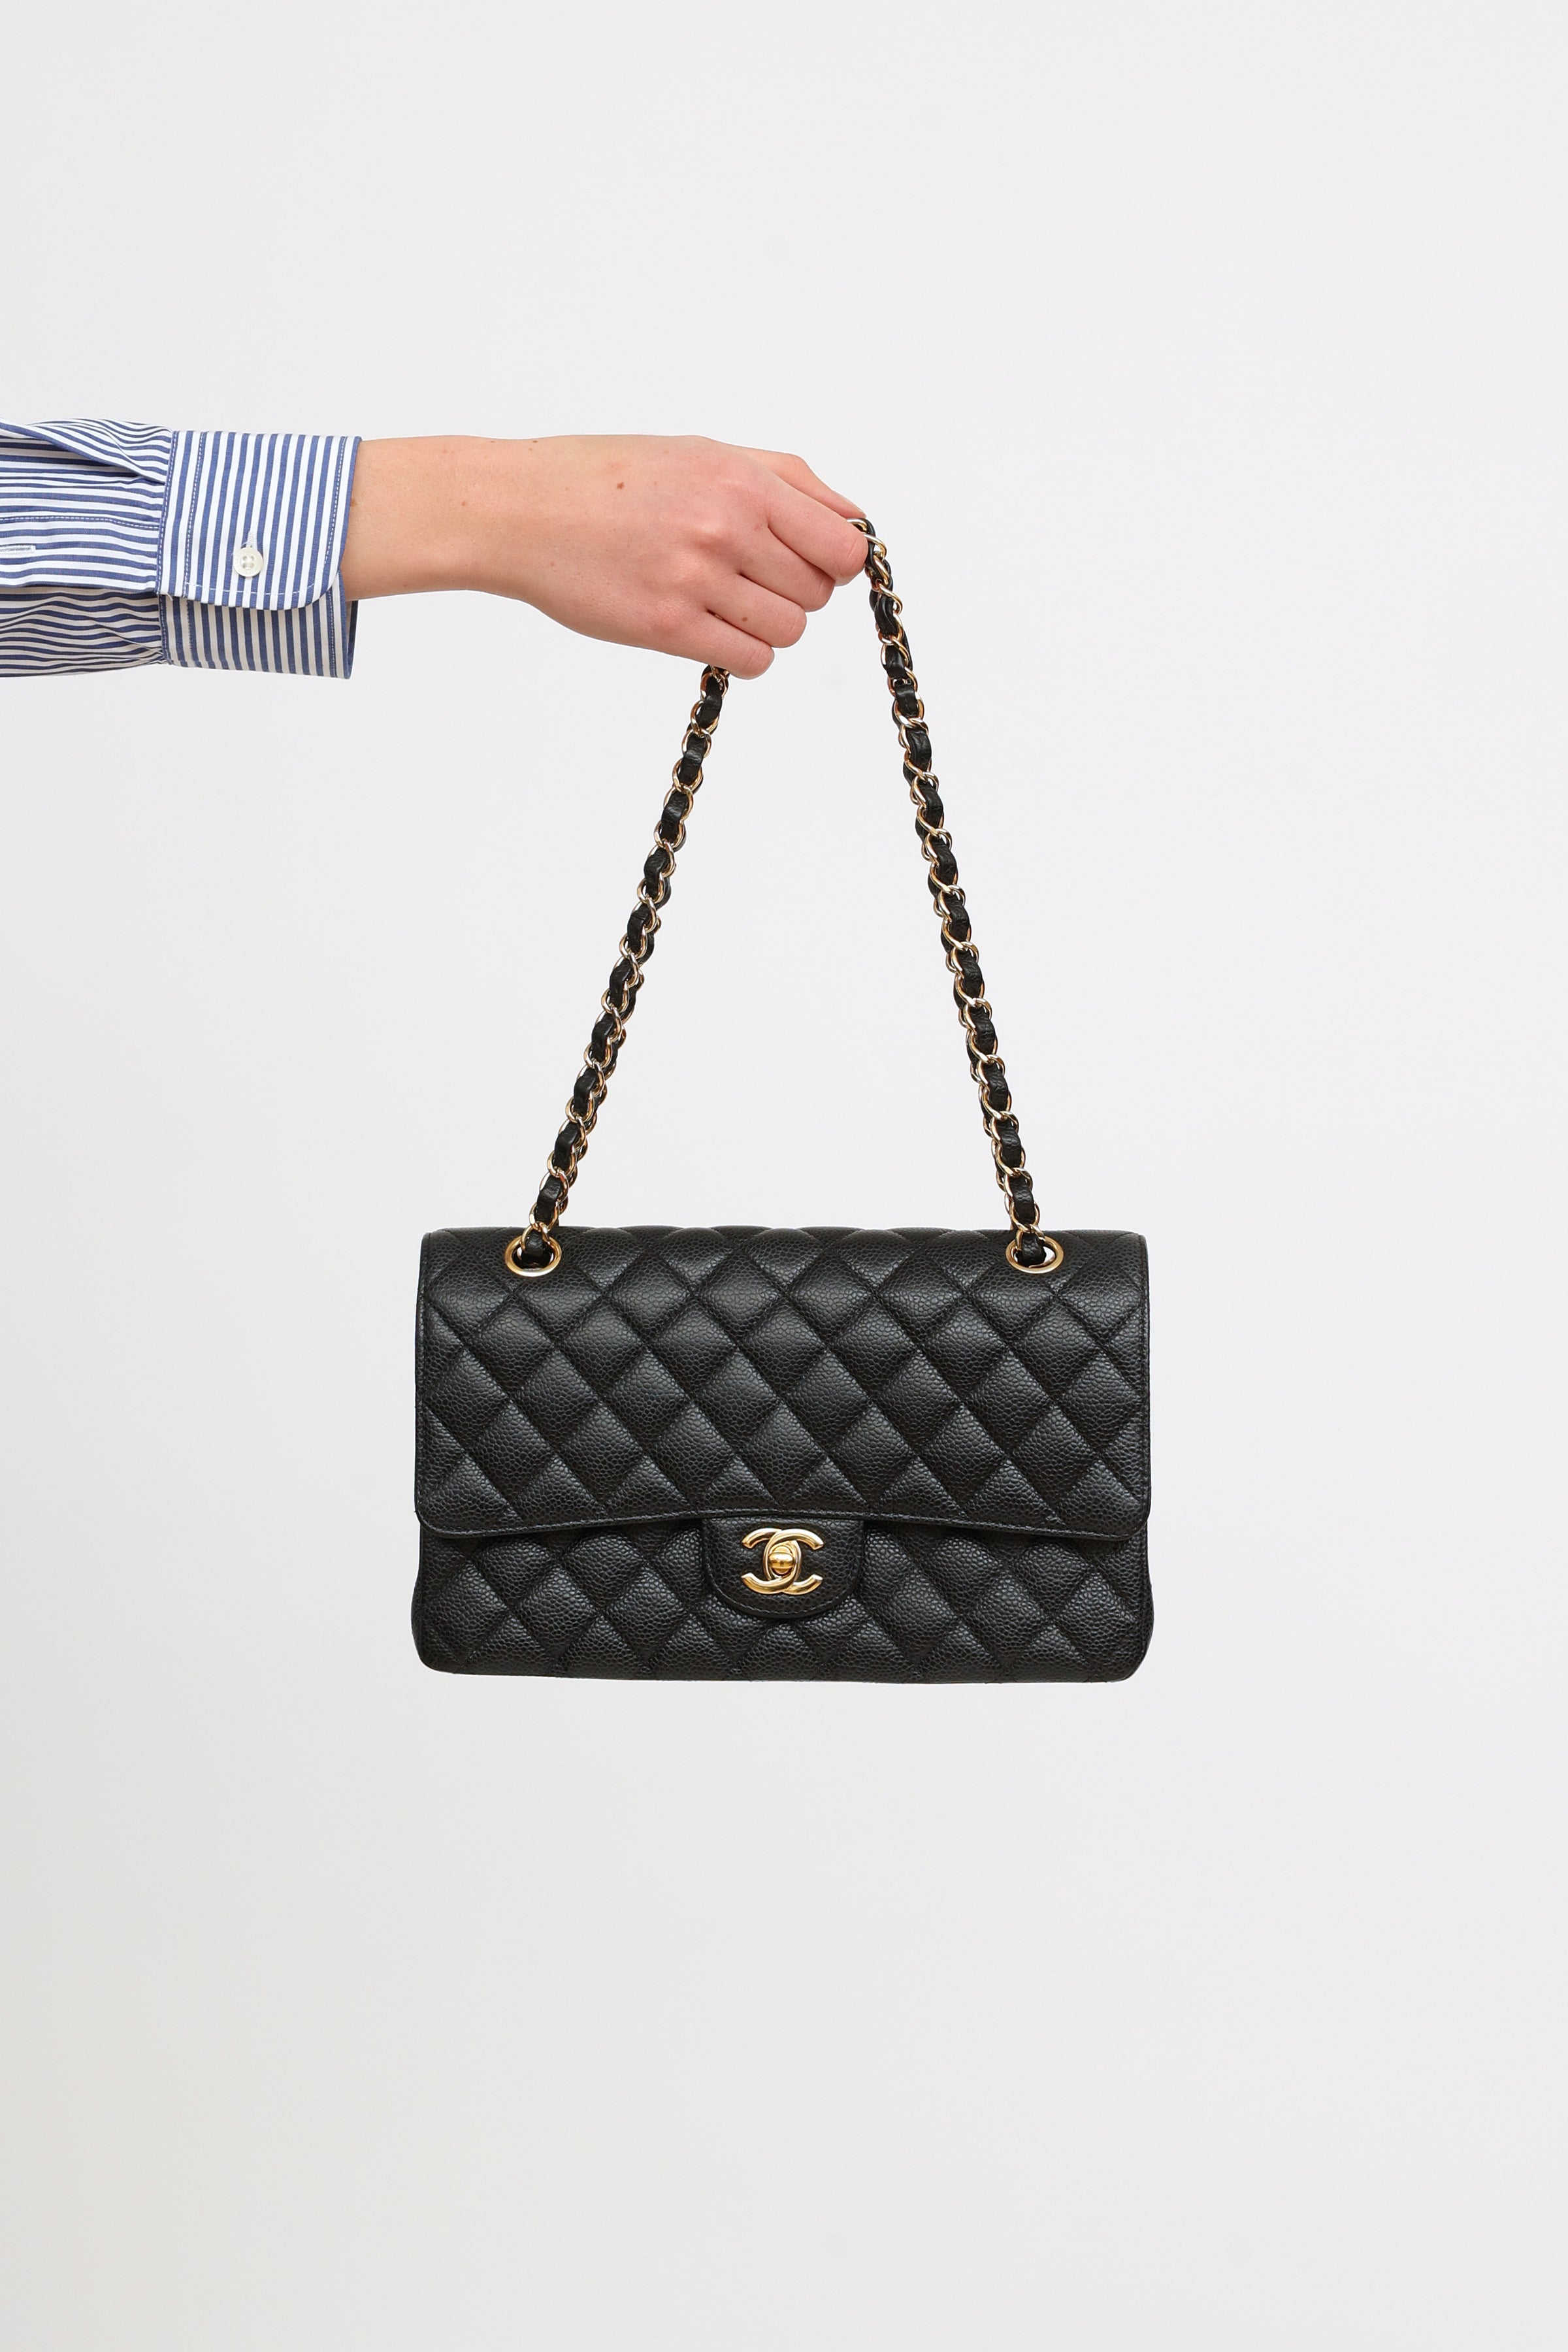 Chanel  double flap shoulder bag  medium  black caviar  SHW  Tín đồ  hàng hiệu